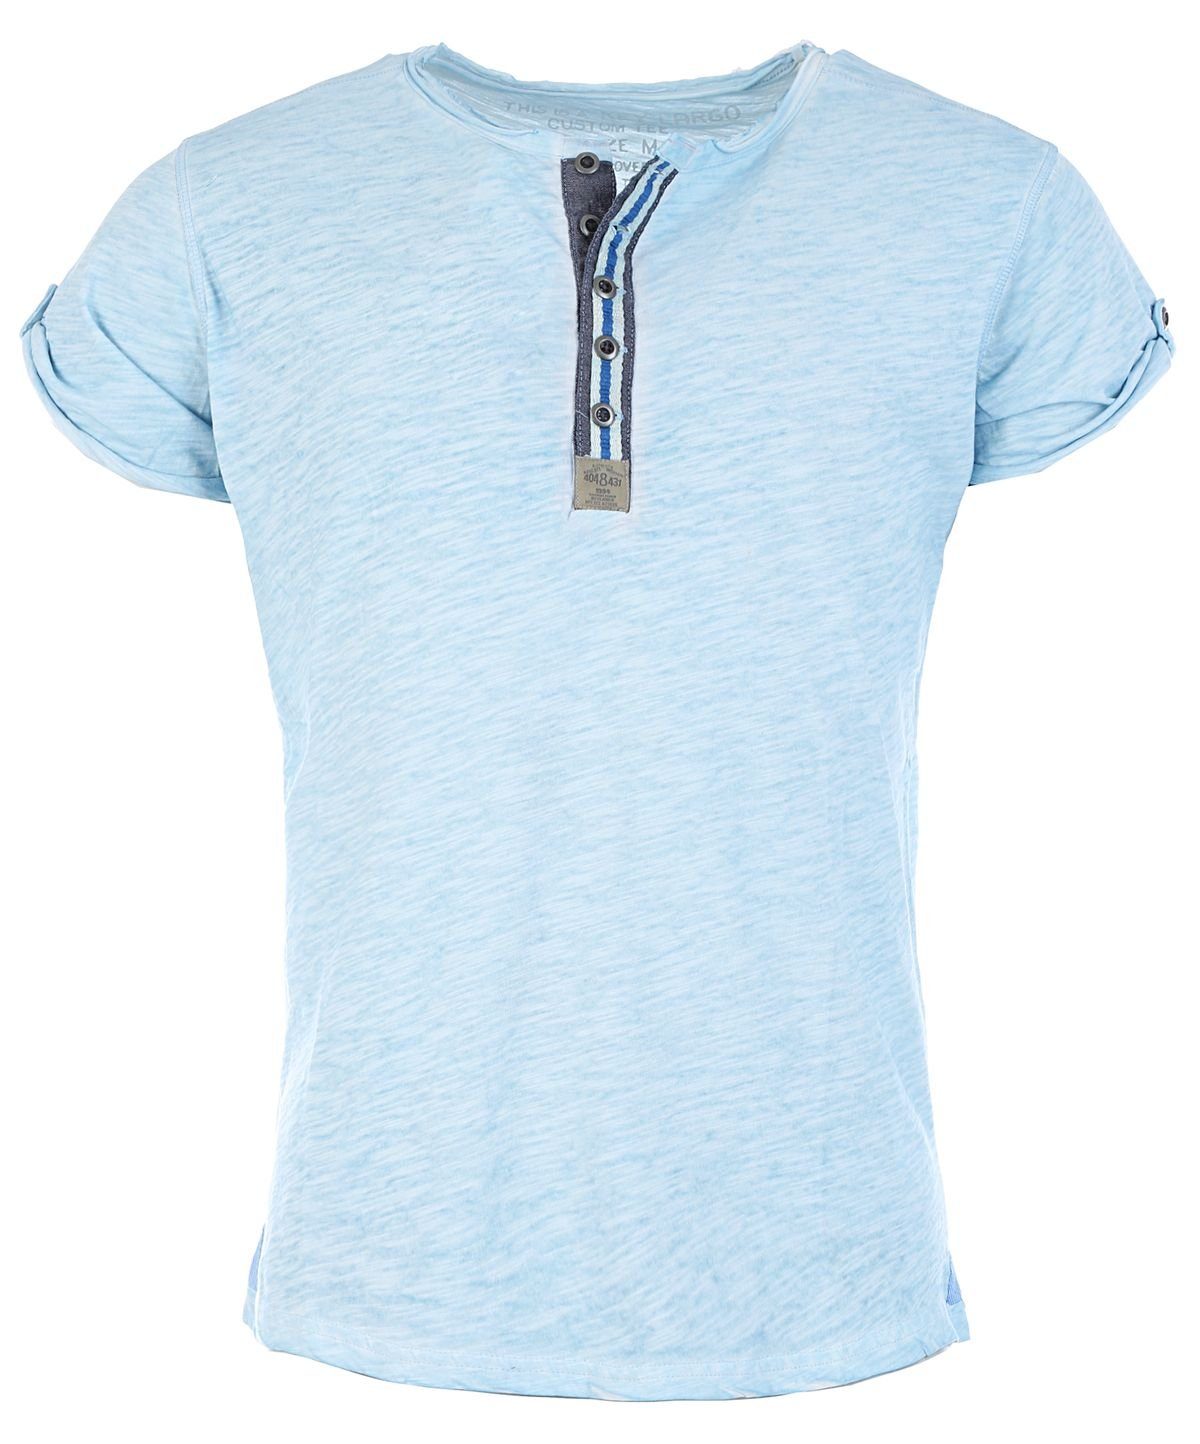 Hellblau Largo MT00023 fit vintage unifarben Look button kurzarm für Key T-Shirt Arena Herren slim mit Knopfleiste